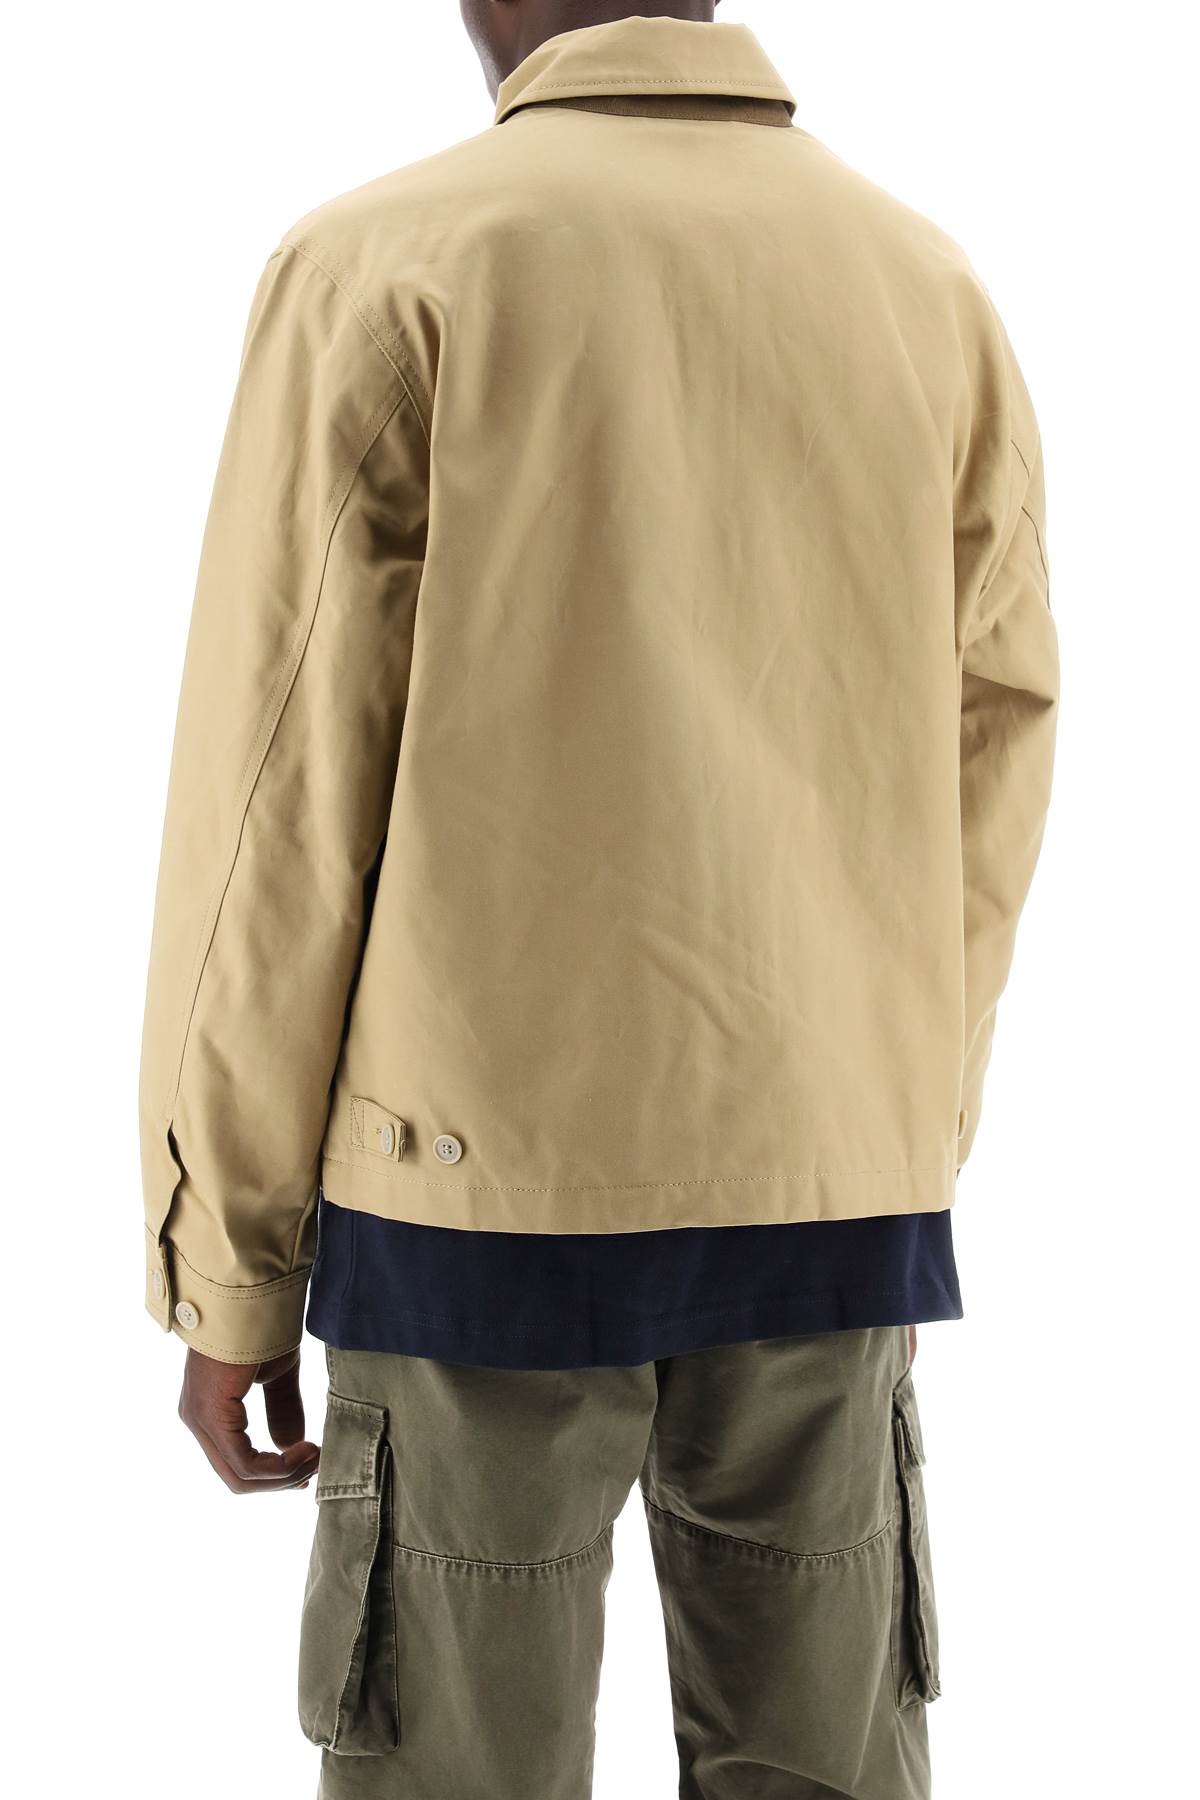 Filson ranger crewman jacket-2